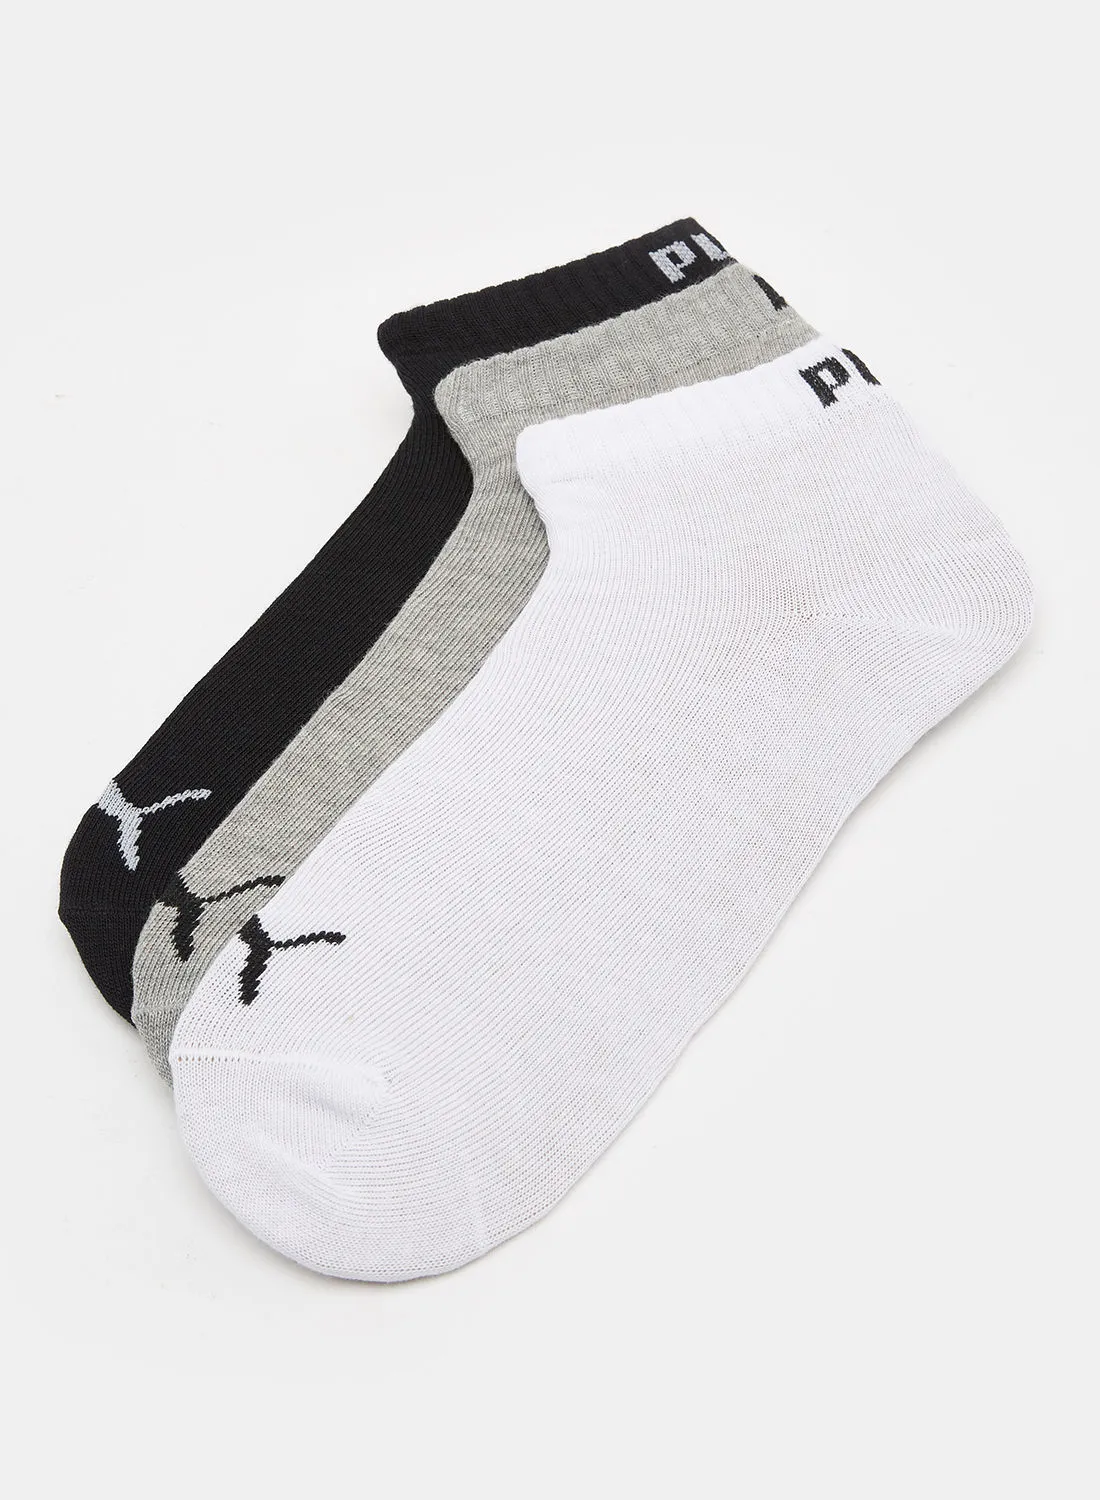 PUMA Boys Quarter Socks (Pack of 3)